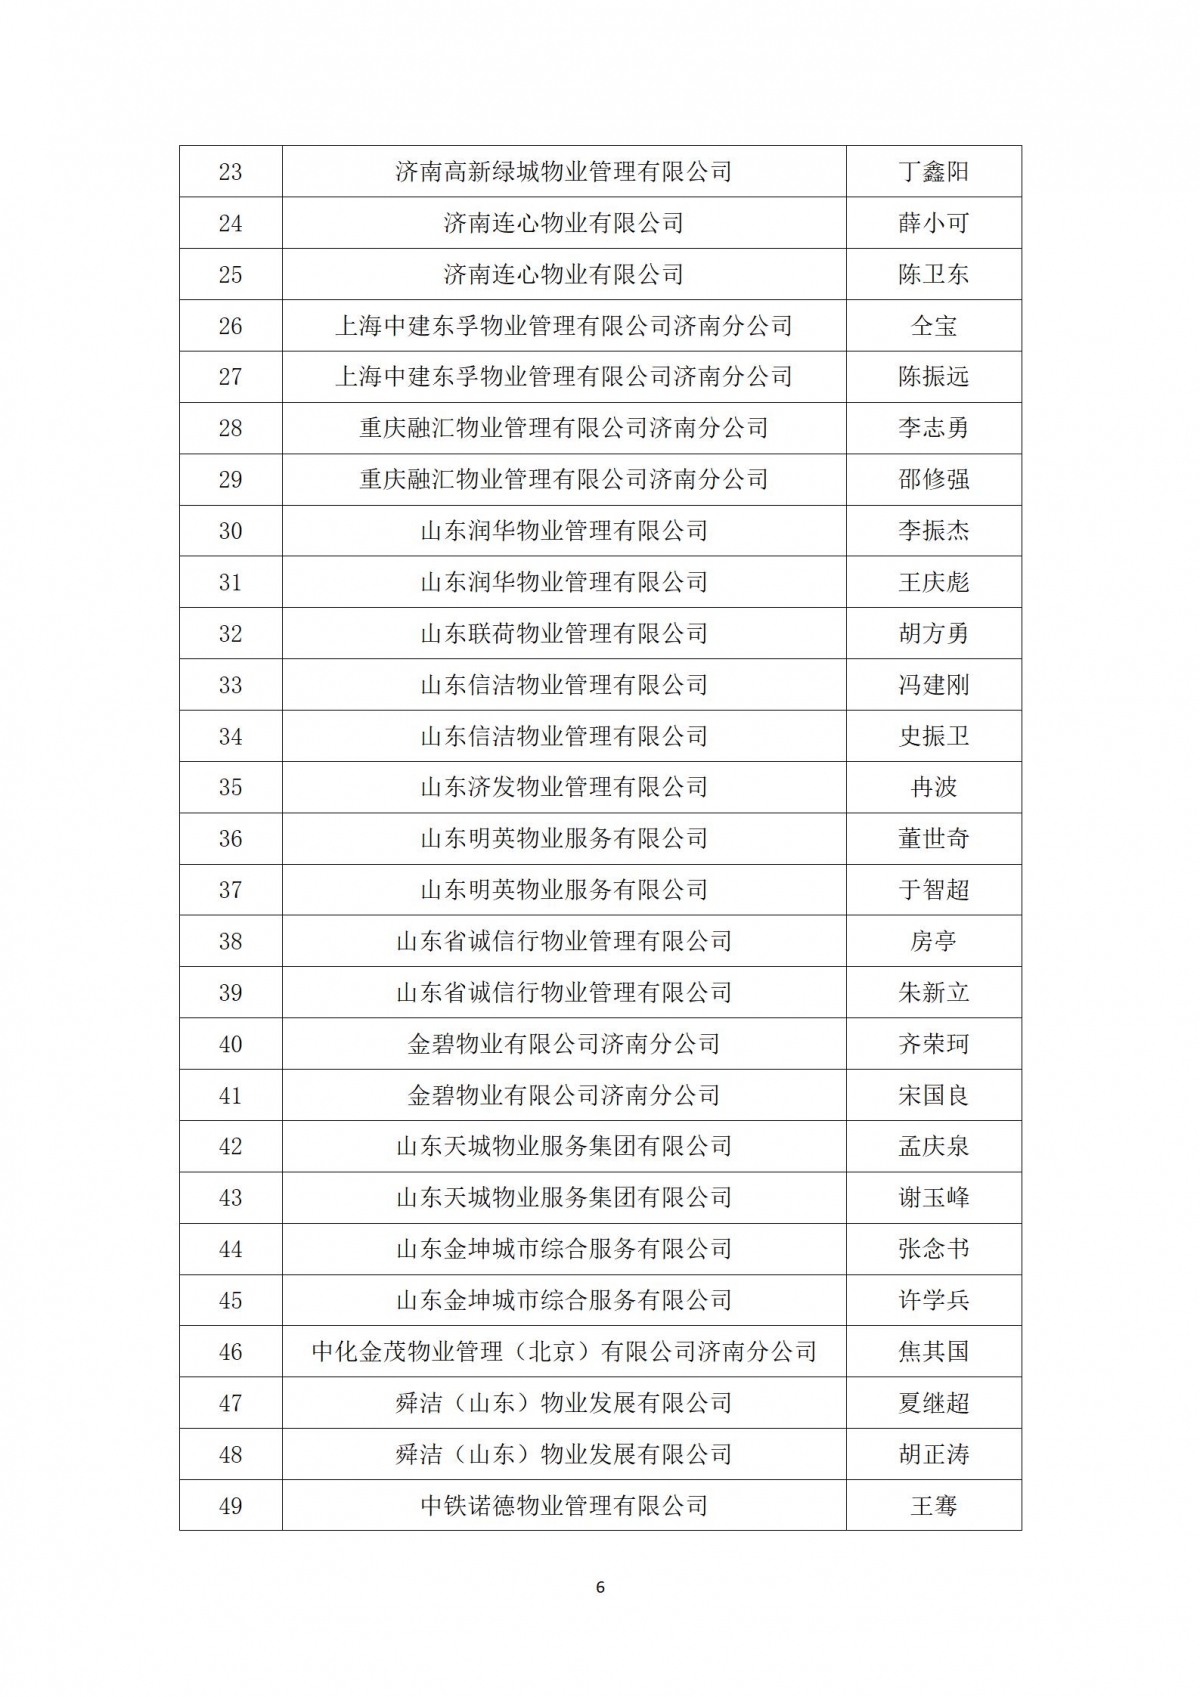 关于“天城杯”第七届济南市物业服务行业职业技能竞赛选手名单的公示_06